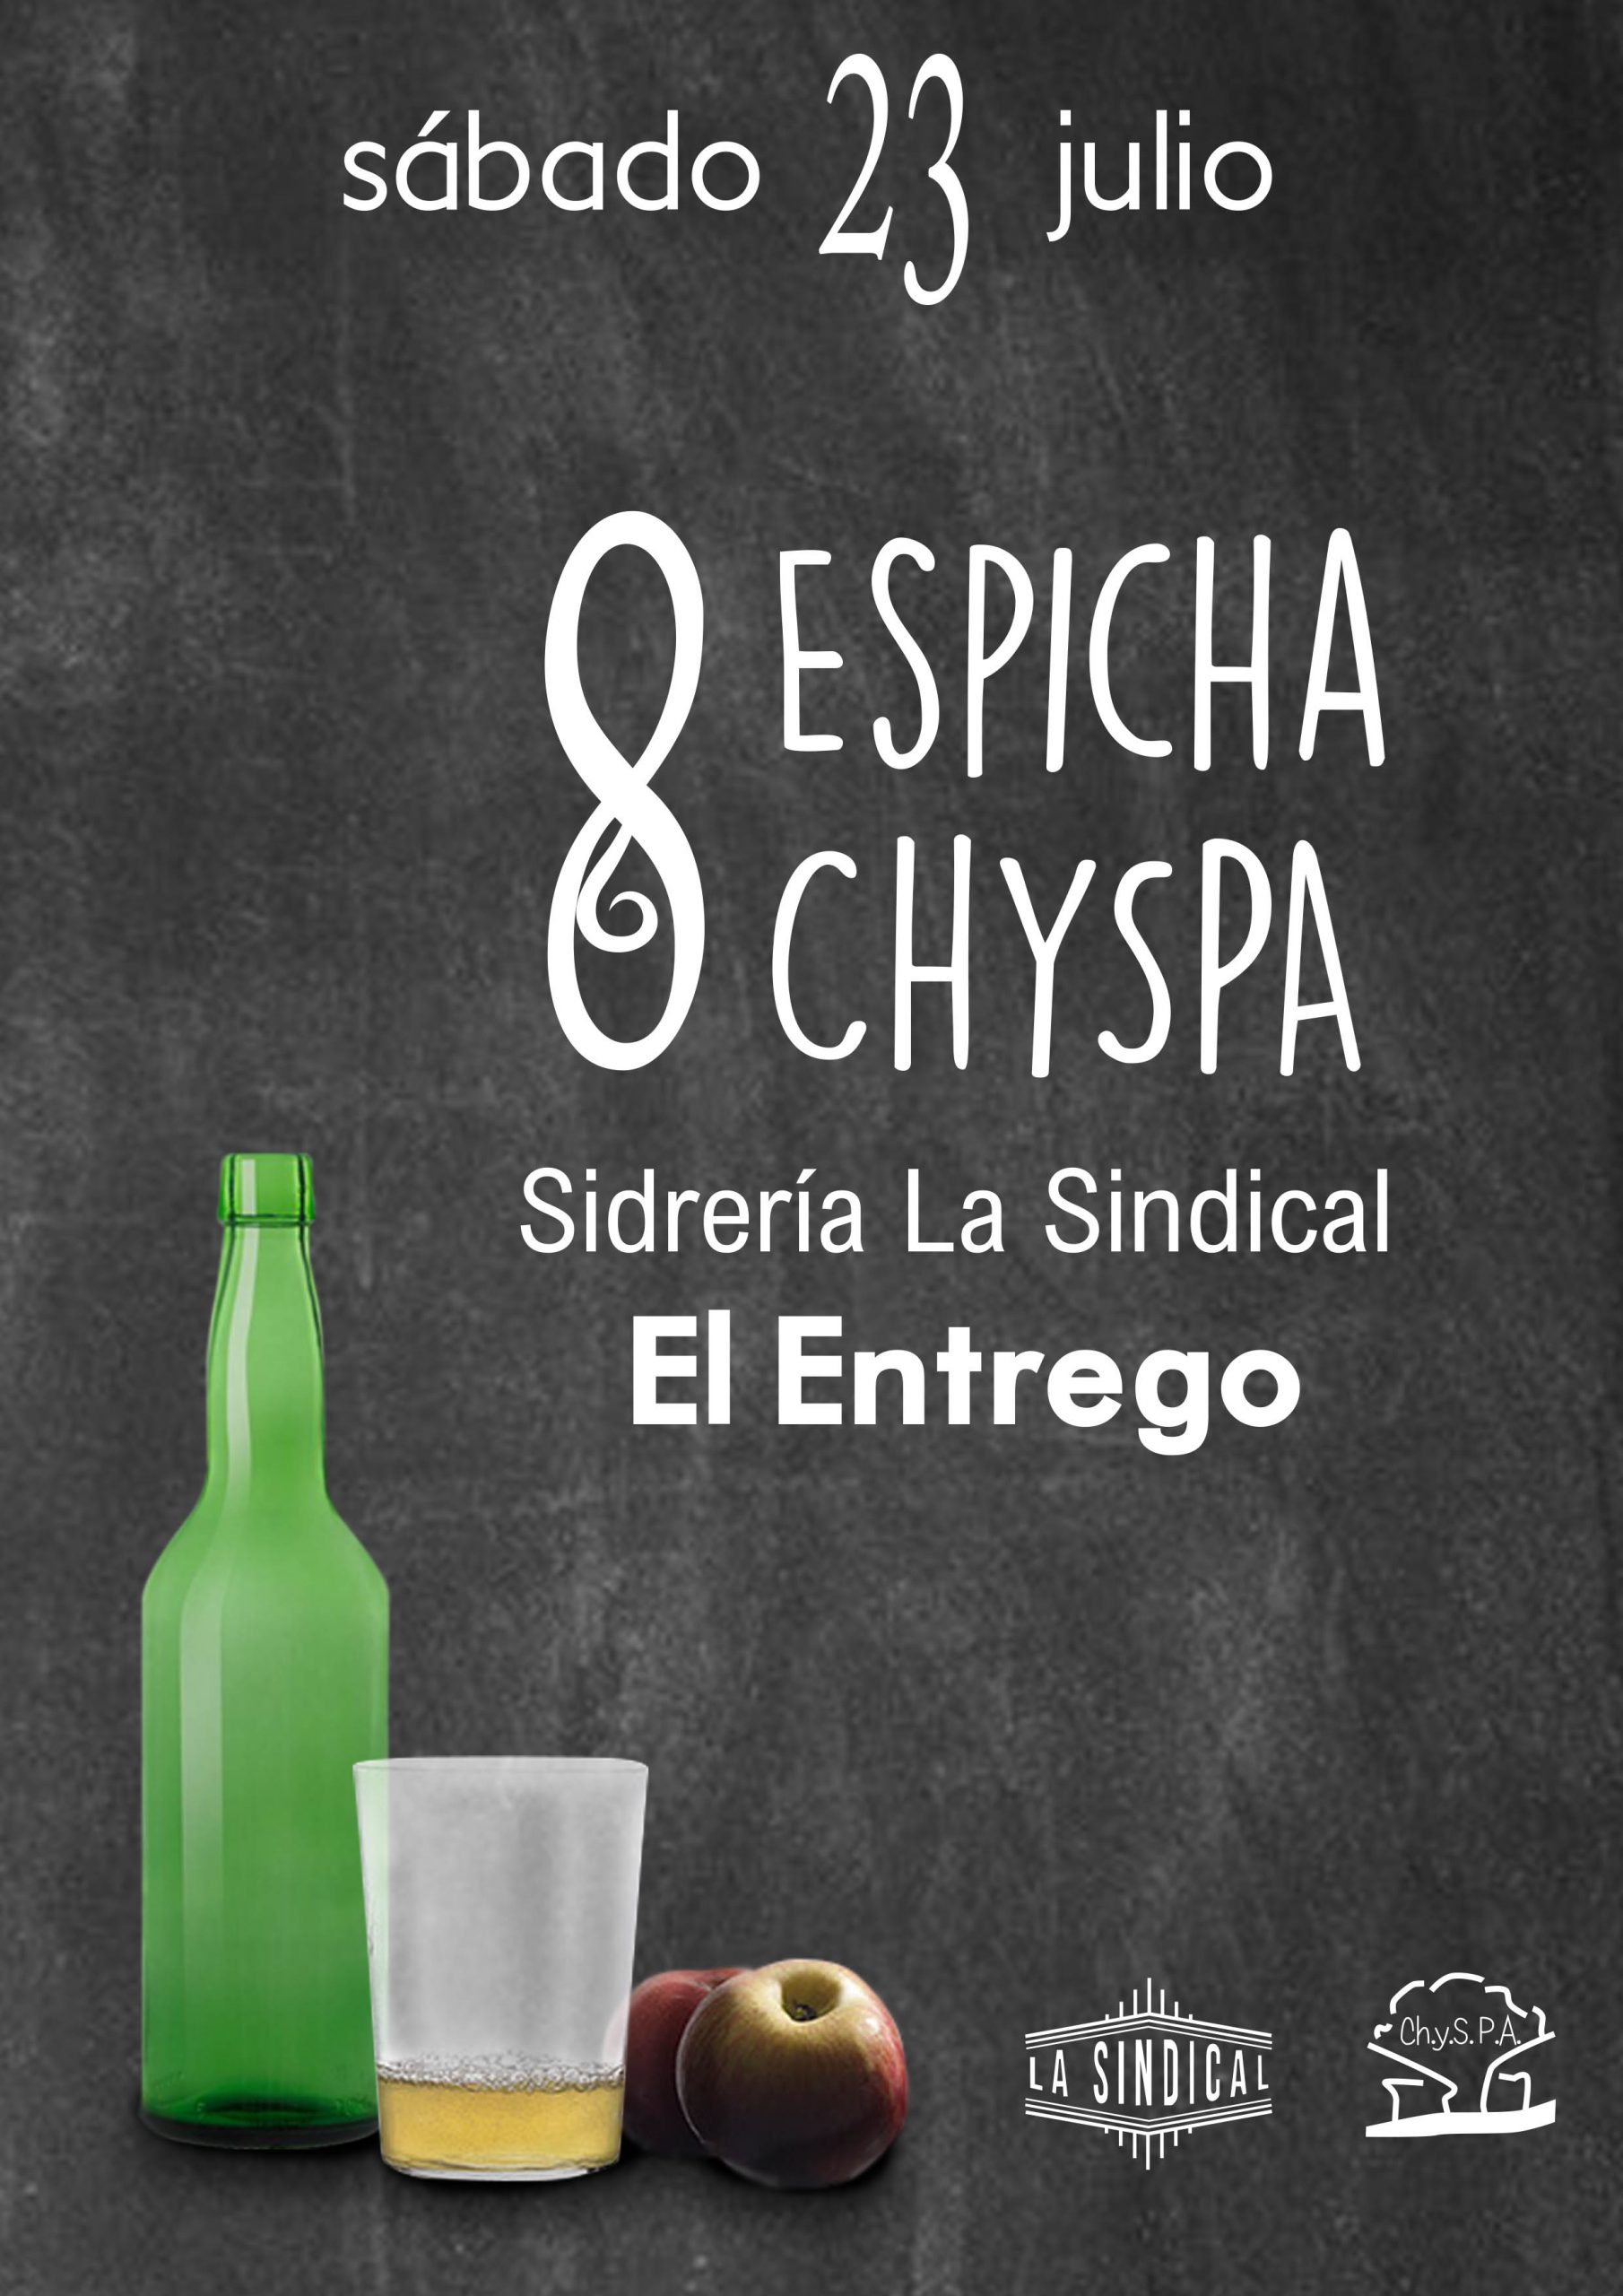 8 espicha ChySPA en la sidrería La Sindical (El Entrego) el sábado 23 de julio de 2022